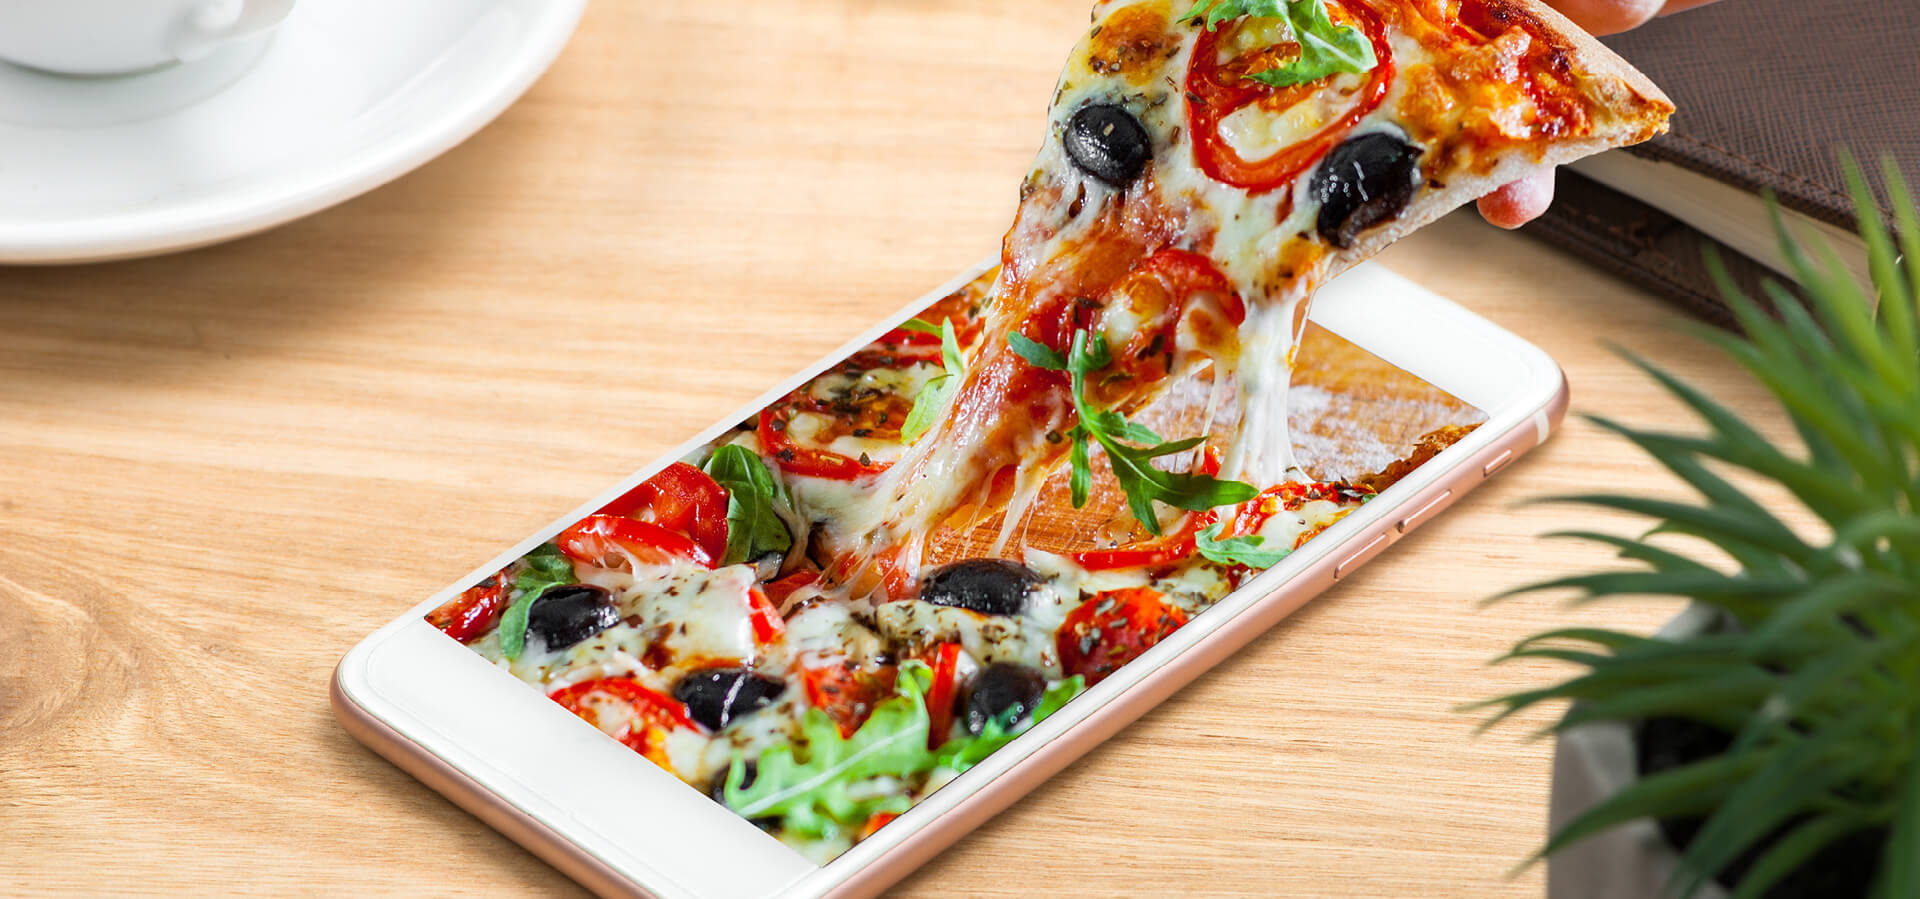 Bild von einem Smartphone mit Pizza